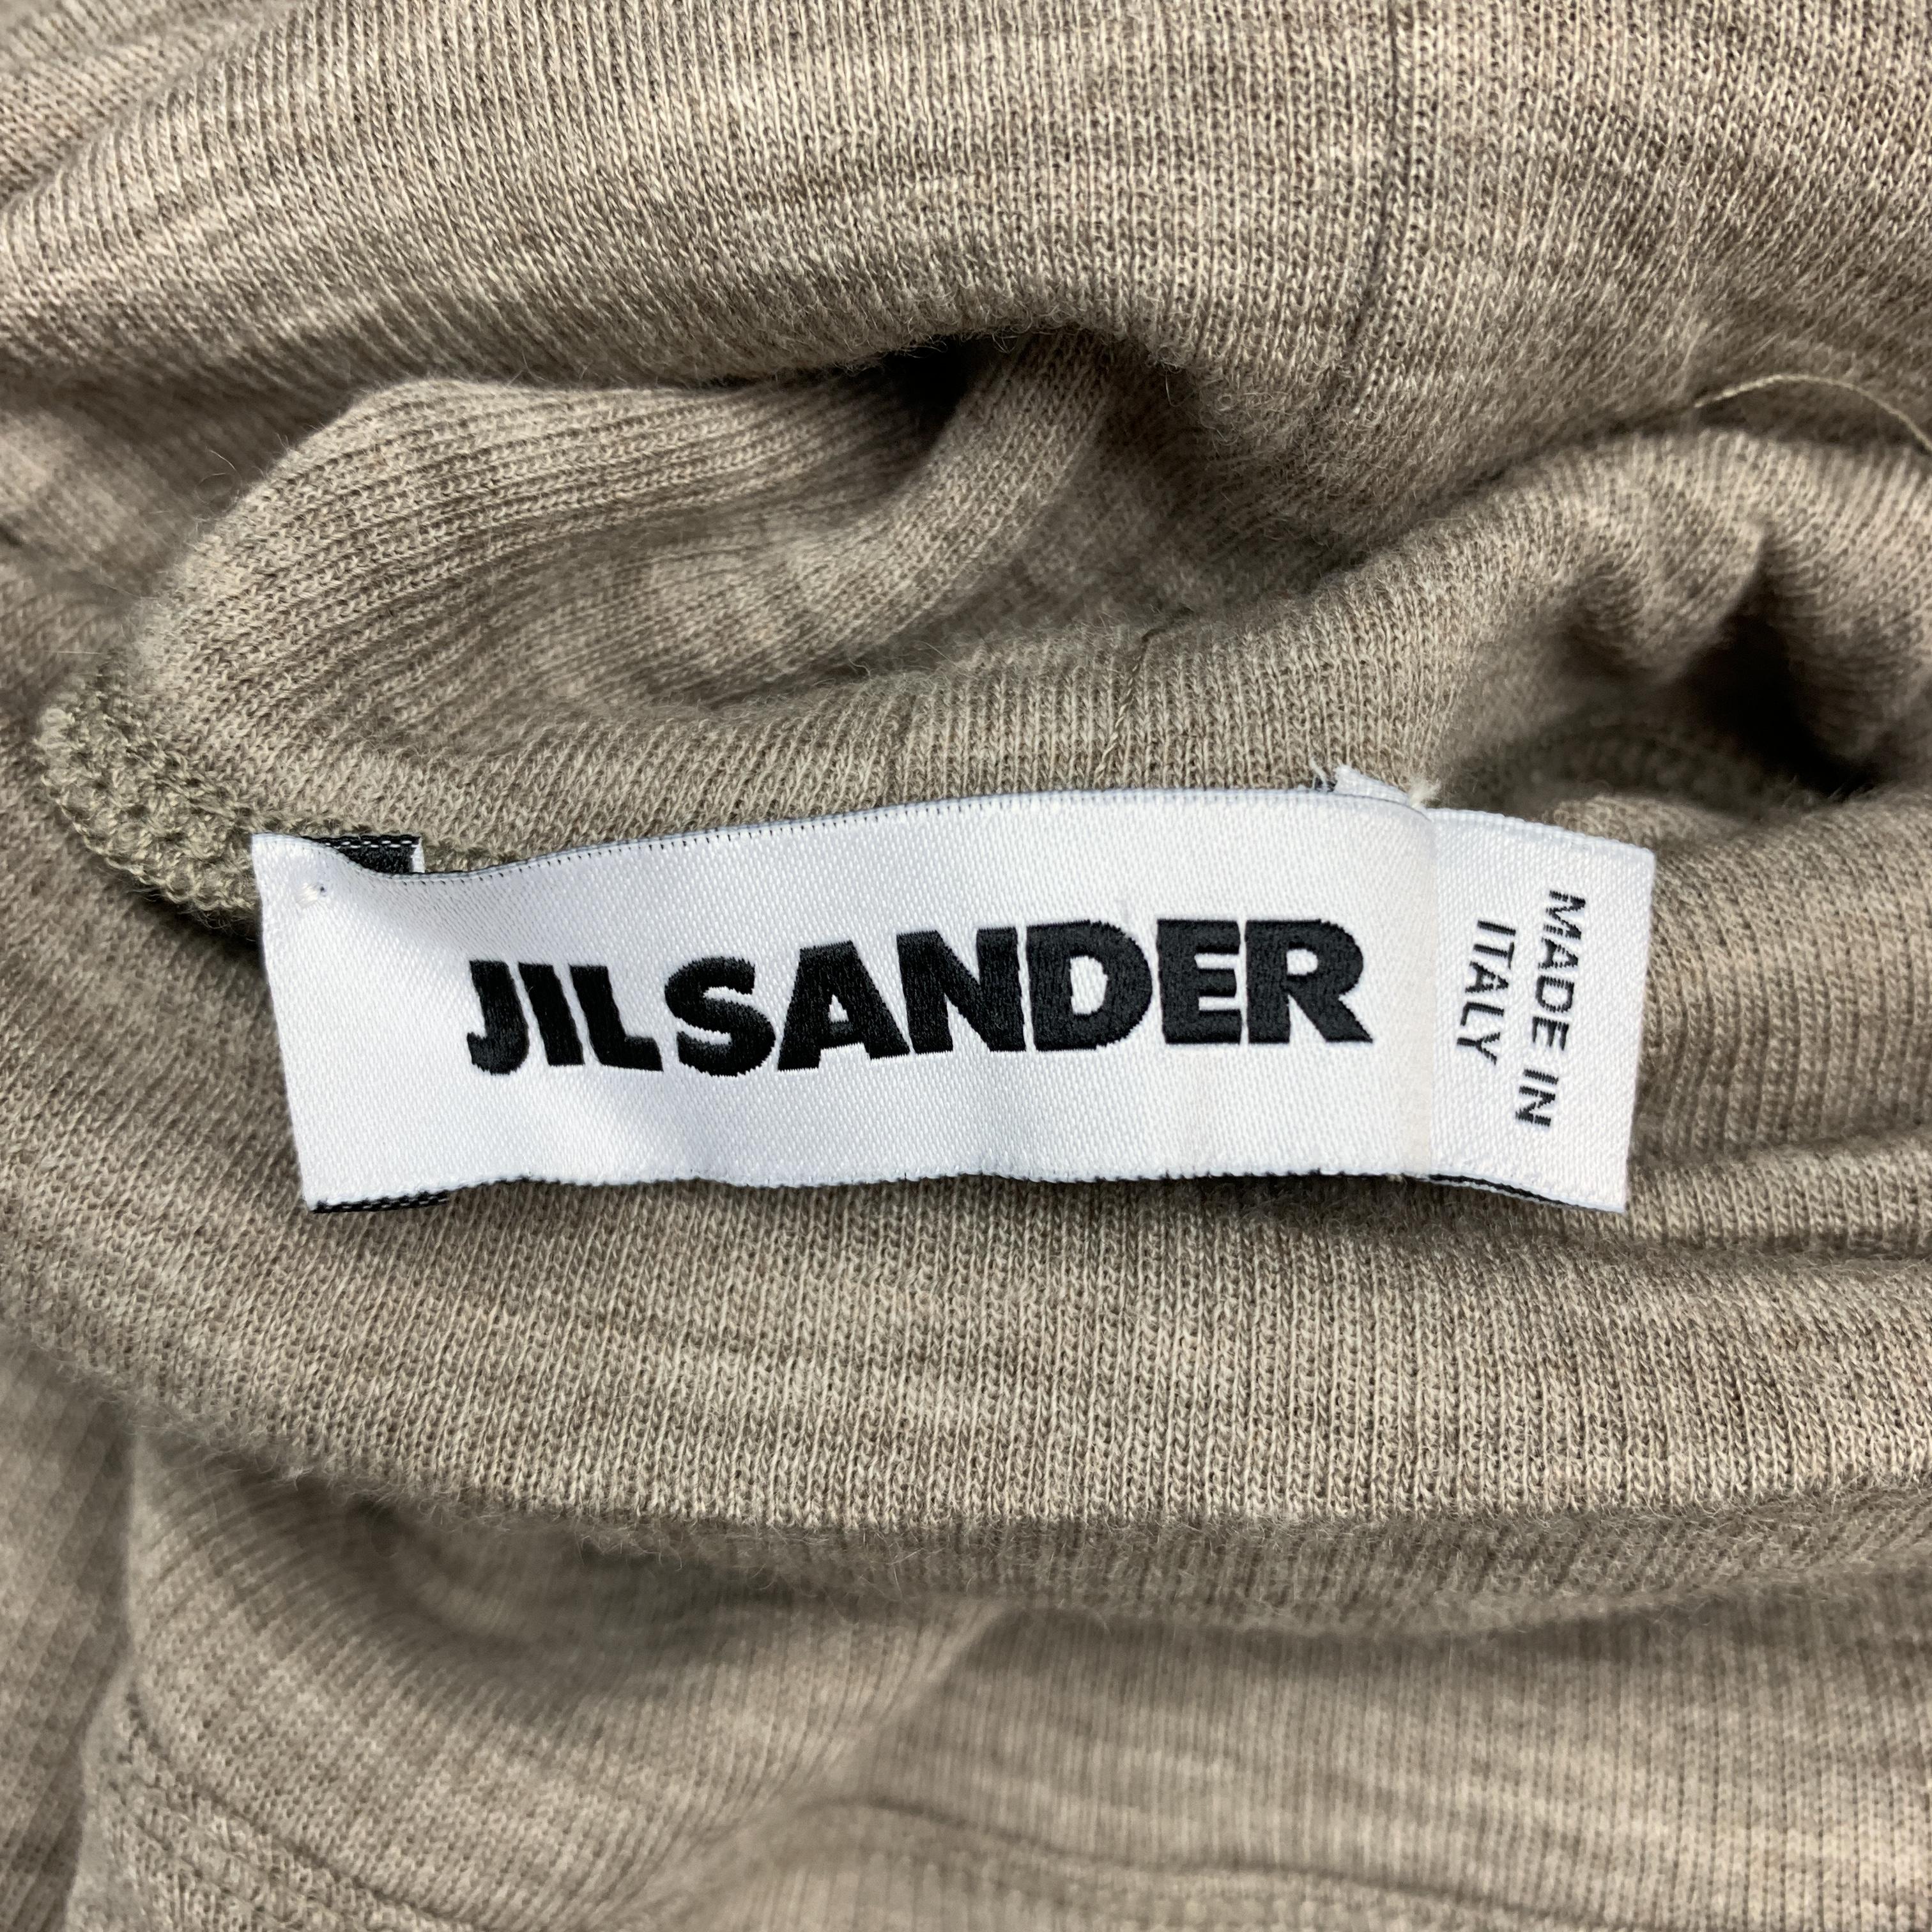 JIL SANDER Size L Oatmeal Beige Wool / Angora Pullover Turtleneck Sweater 1